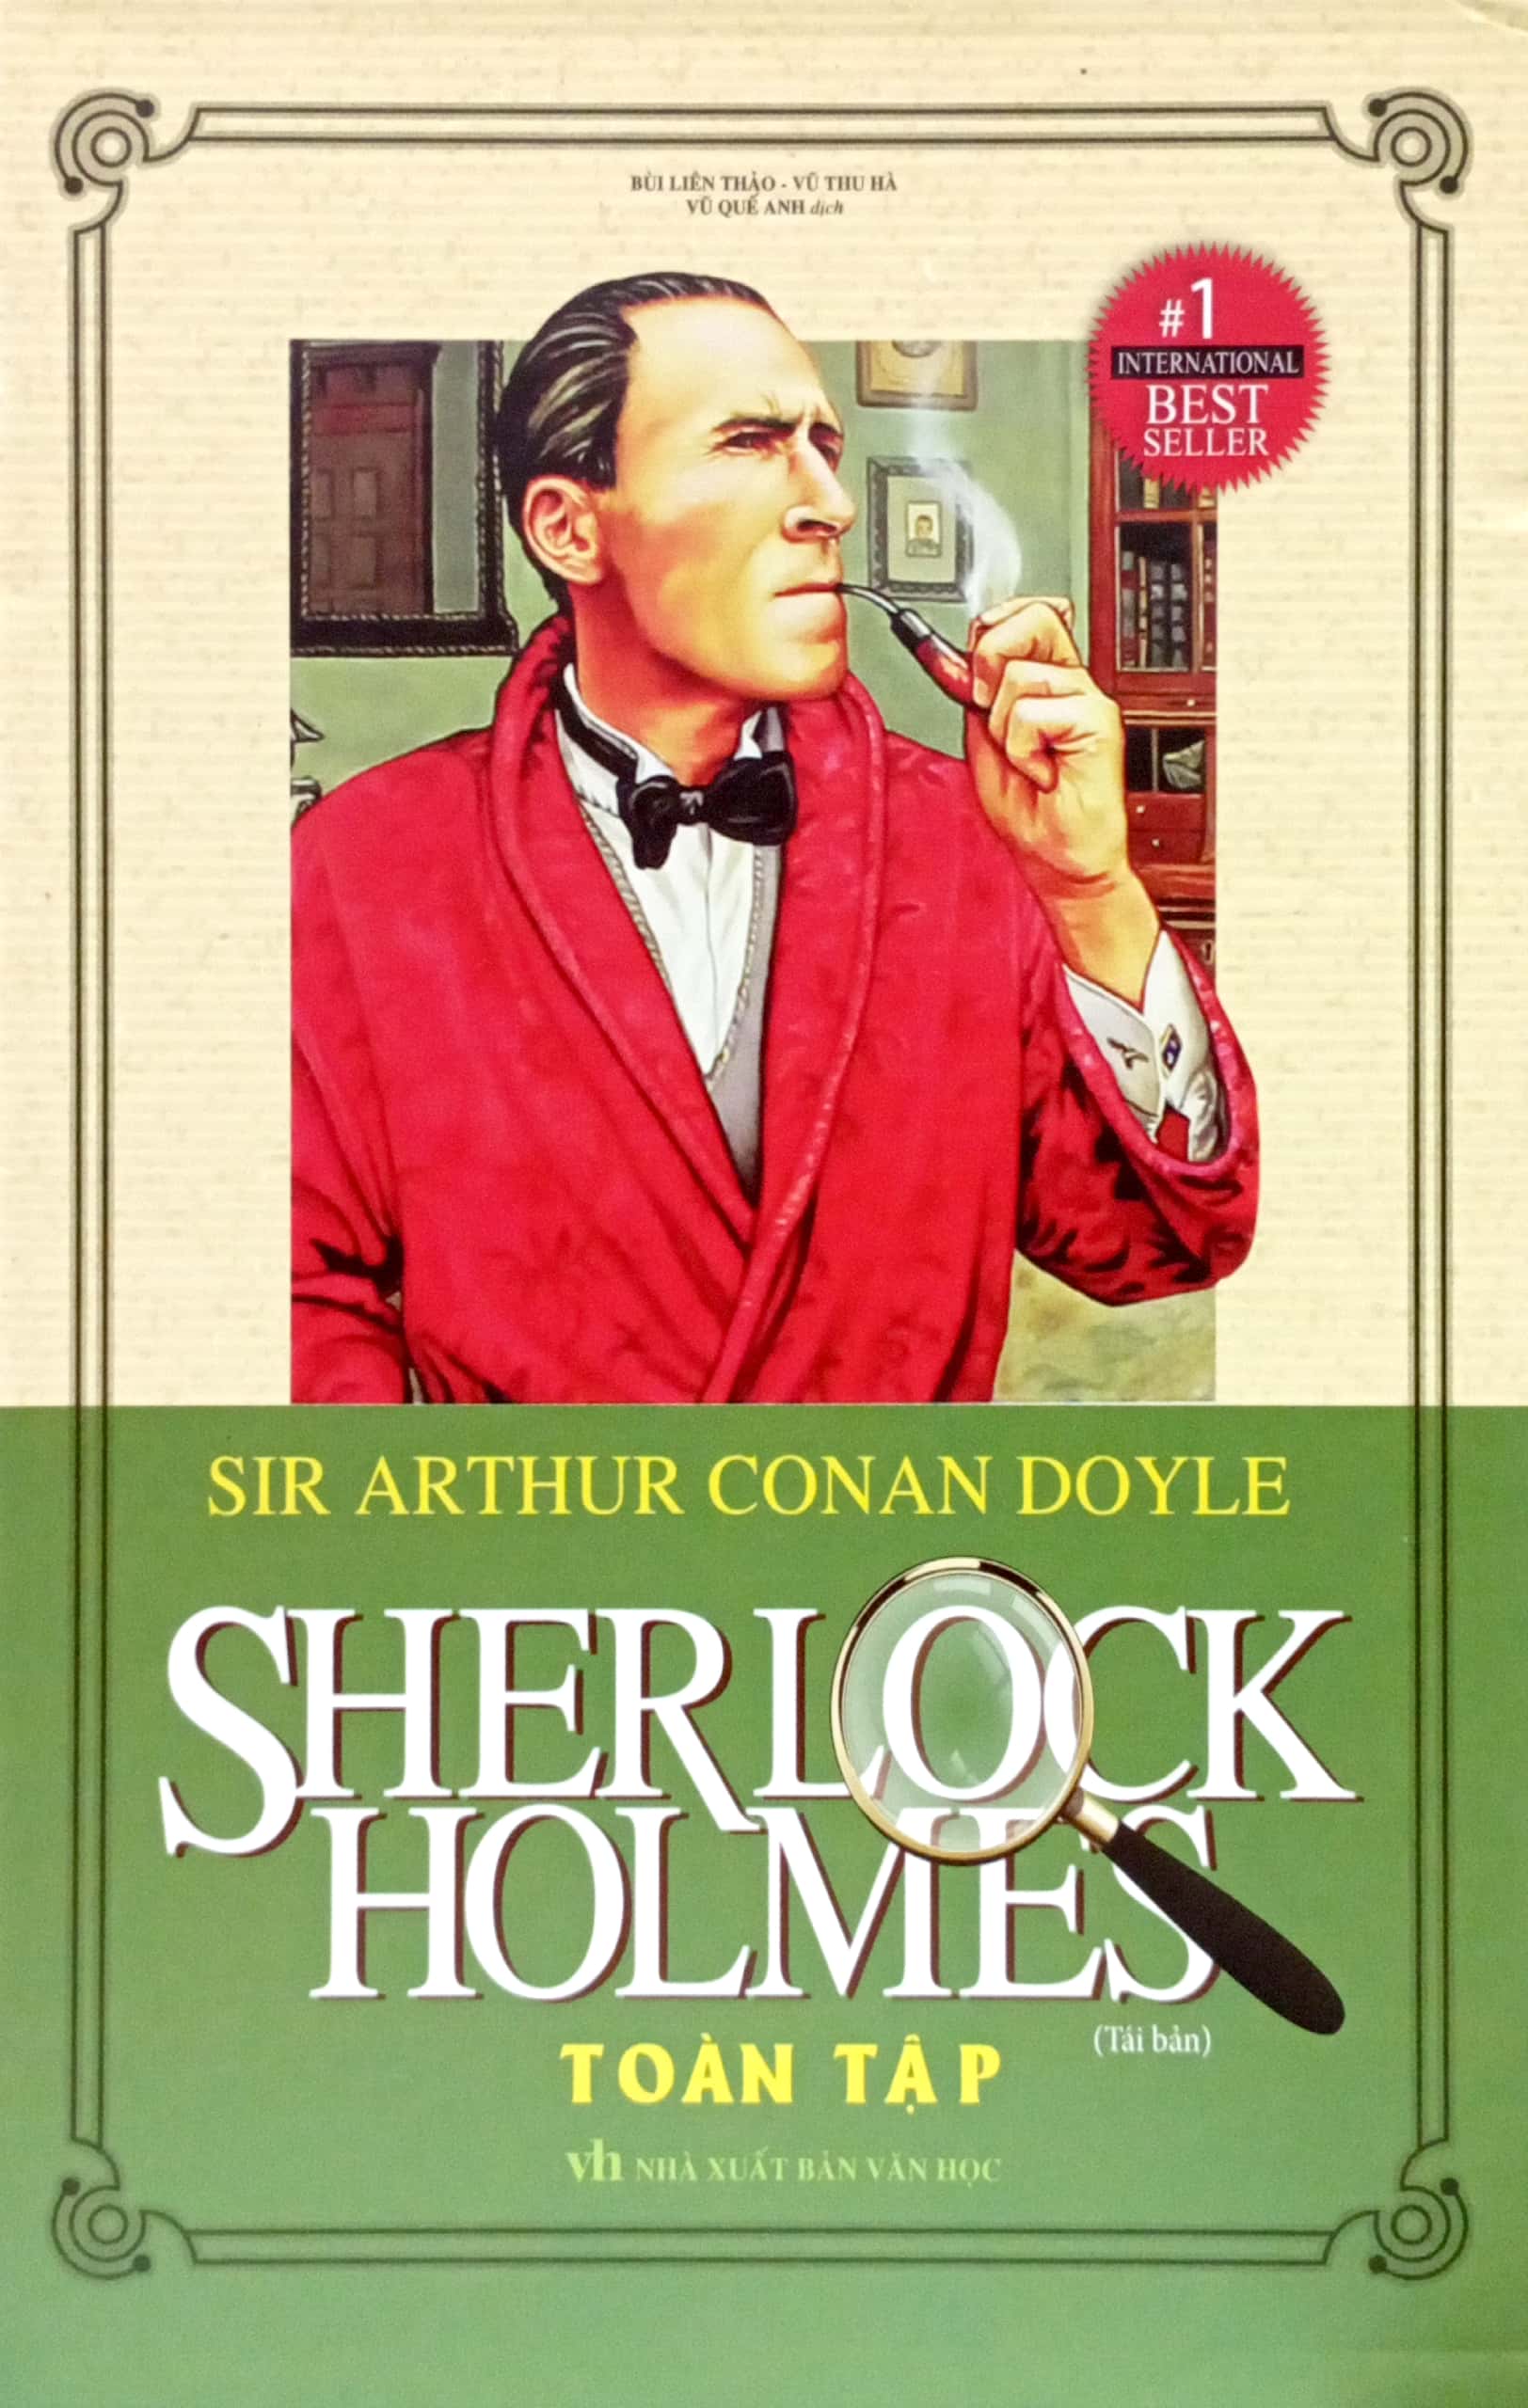 Sherlock Holmes Toàn Tập Bộ 3 Tập PDF